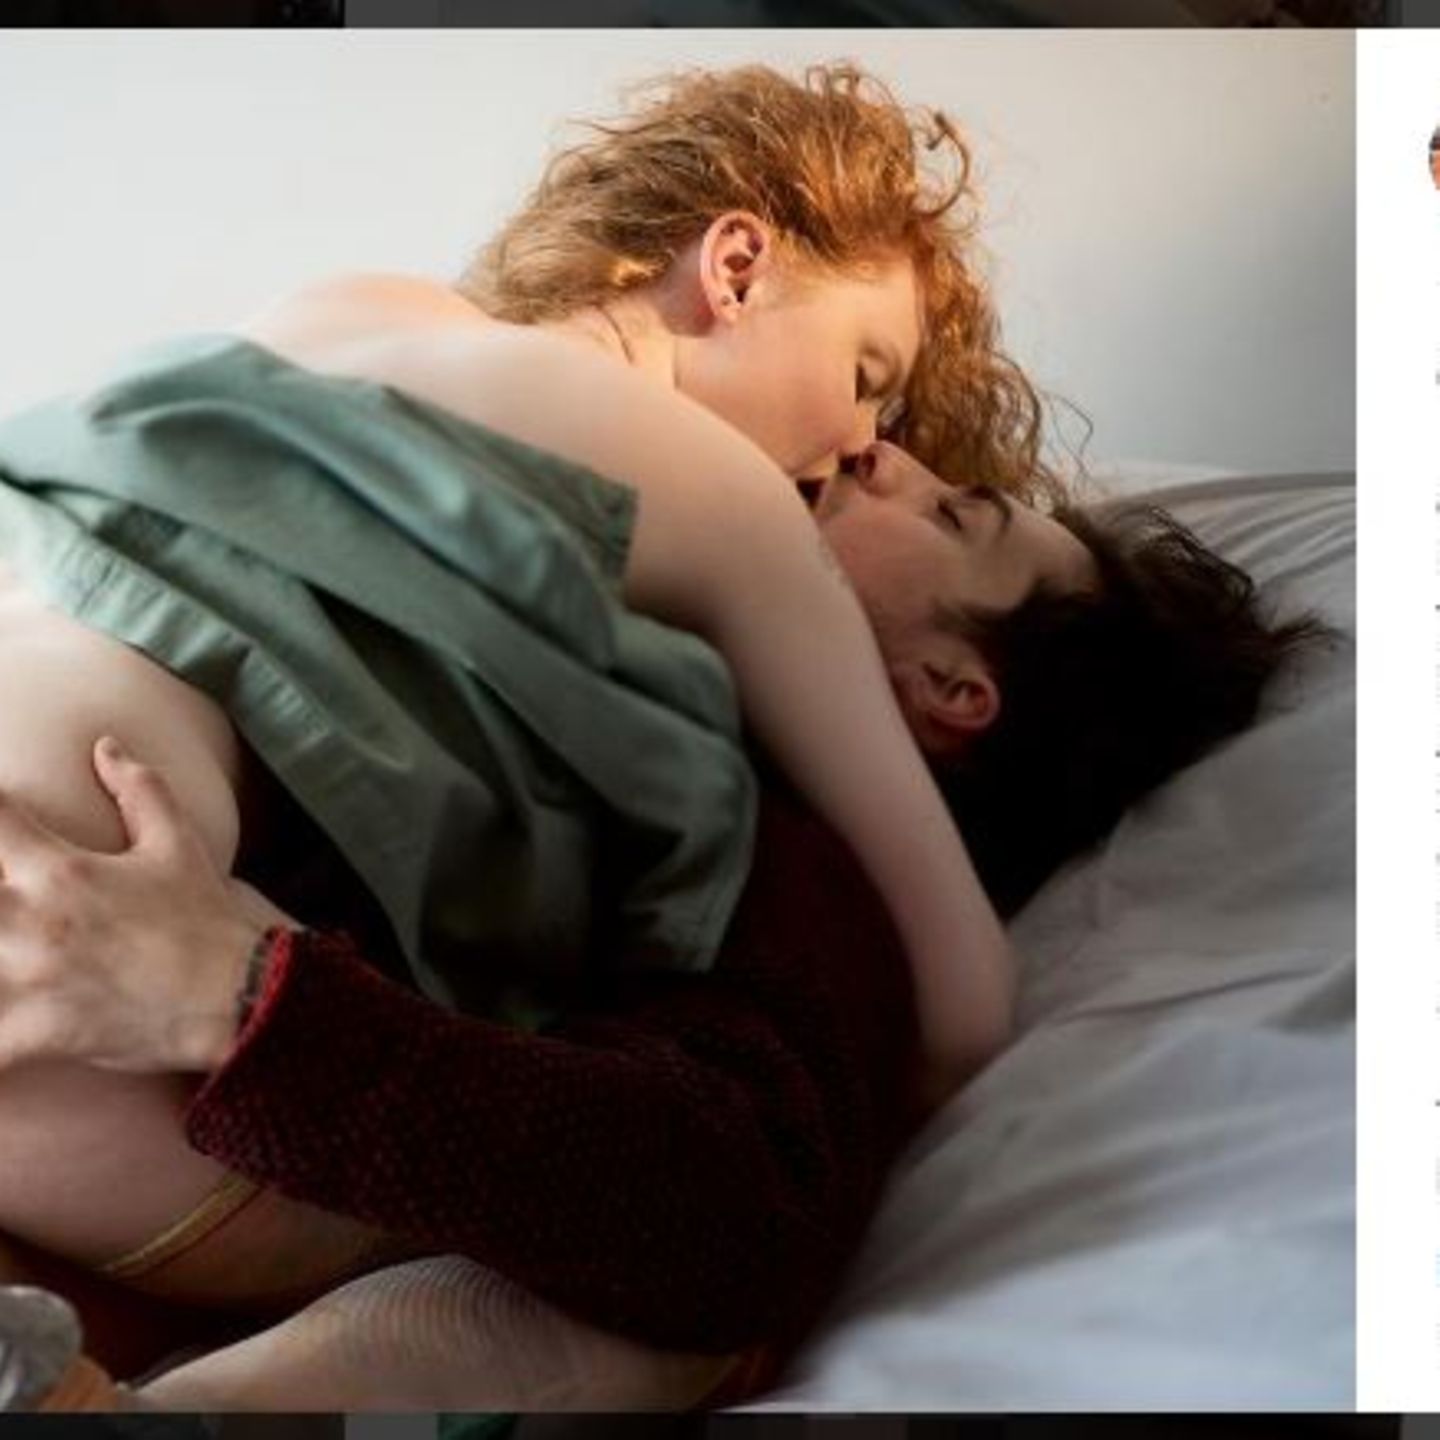 US-Modefirma wirbt mit echten Sex-Bildern STERN.de